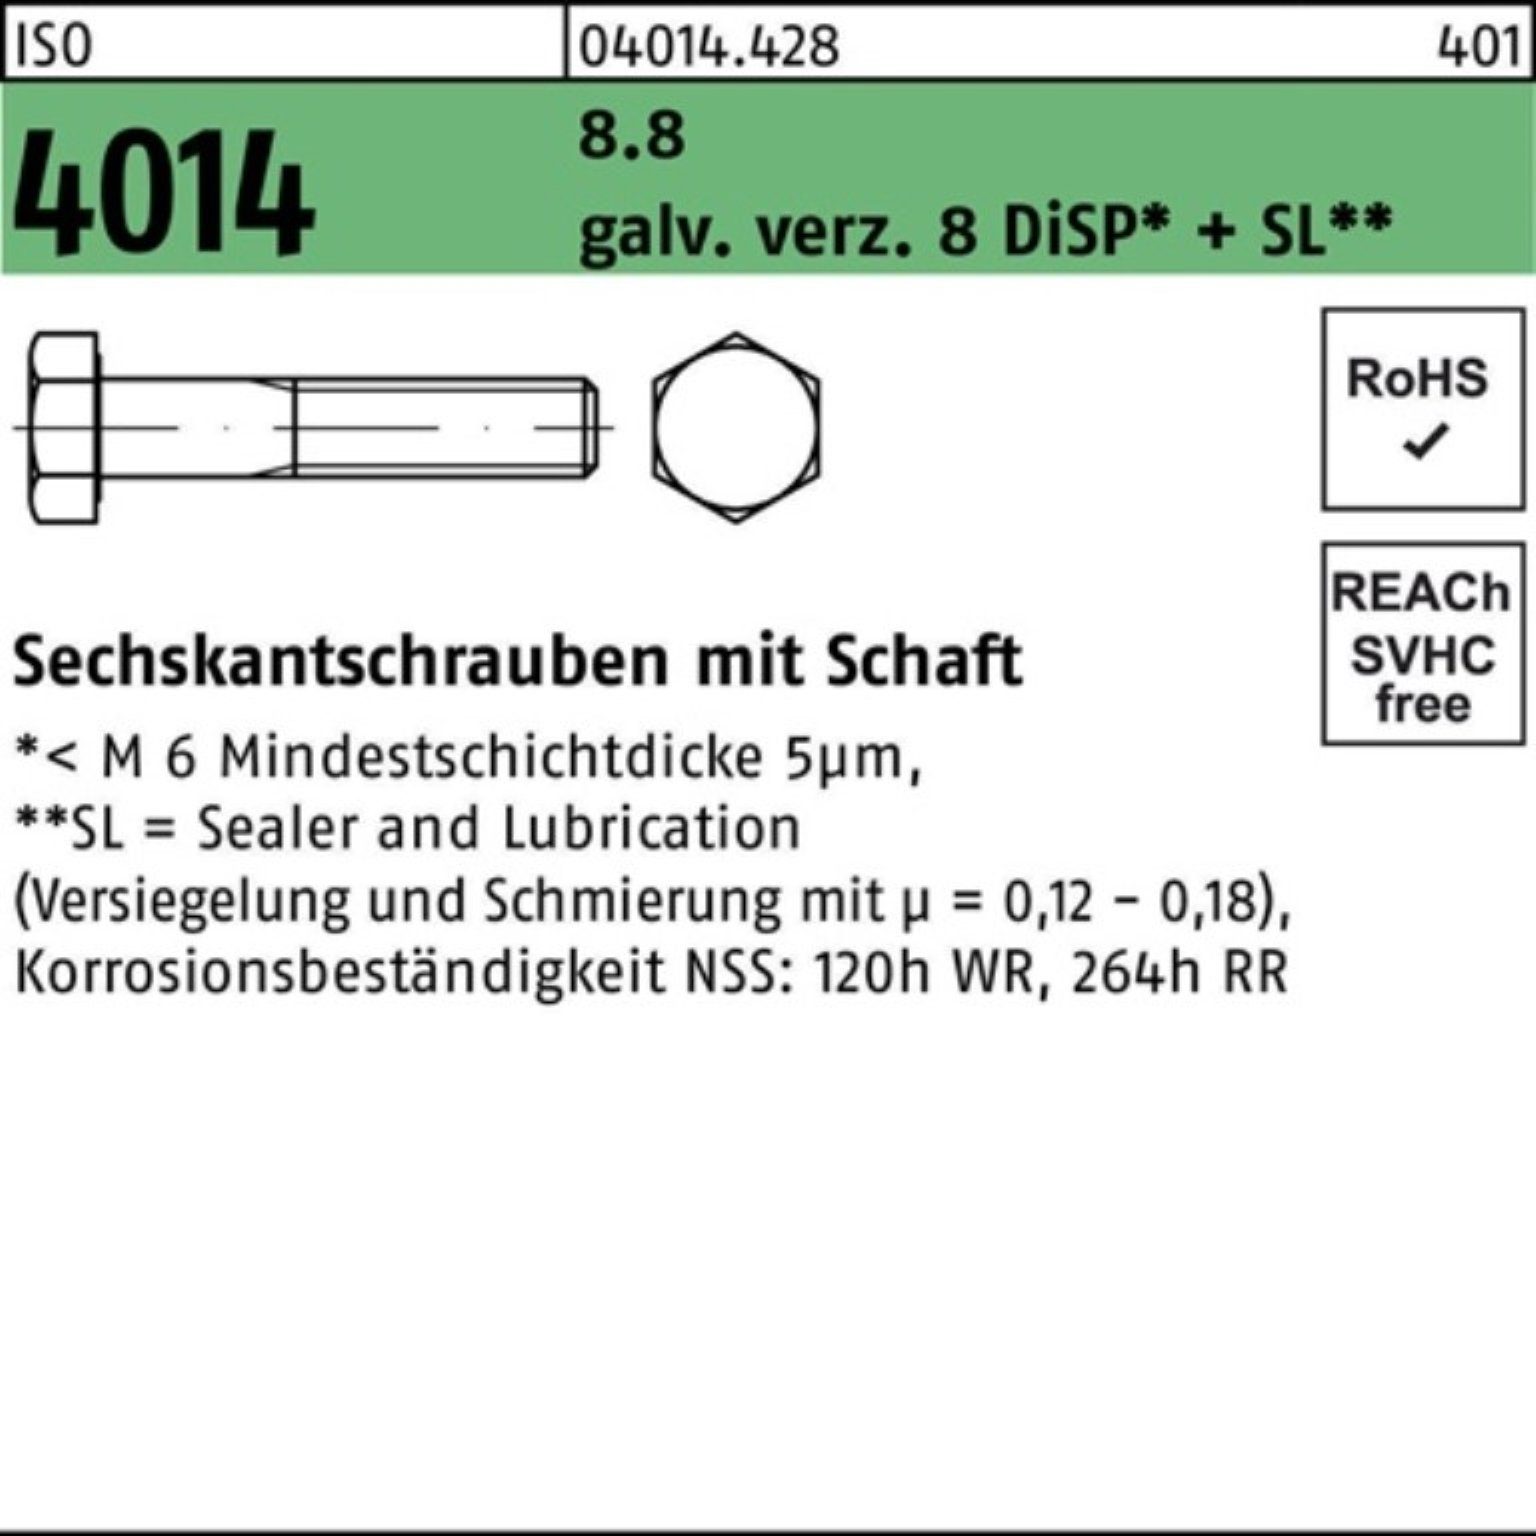 8 galv.verz. Bufab ISO 4014 Sechskantschraube Pack M8x80 Sechskantschraube Di Schaft 8.8 200er